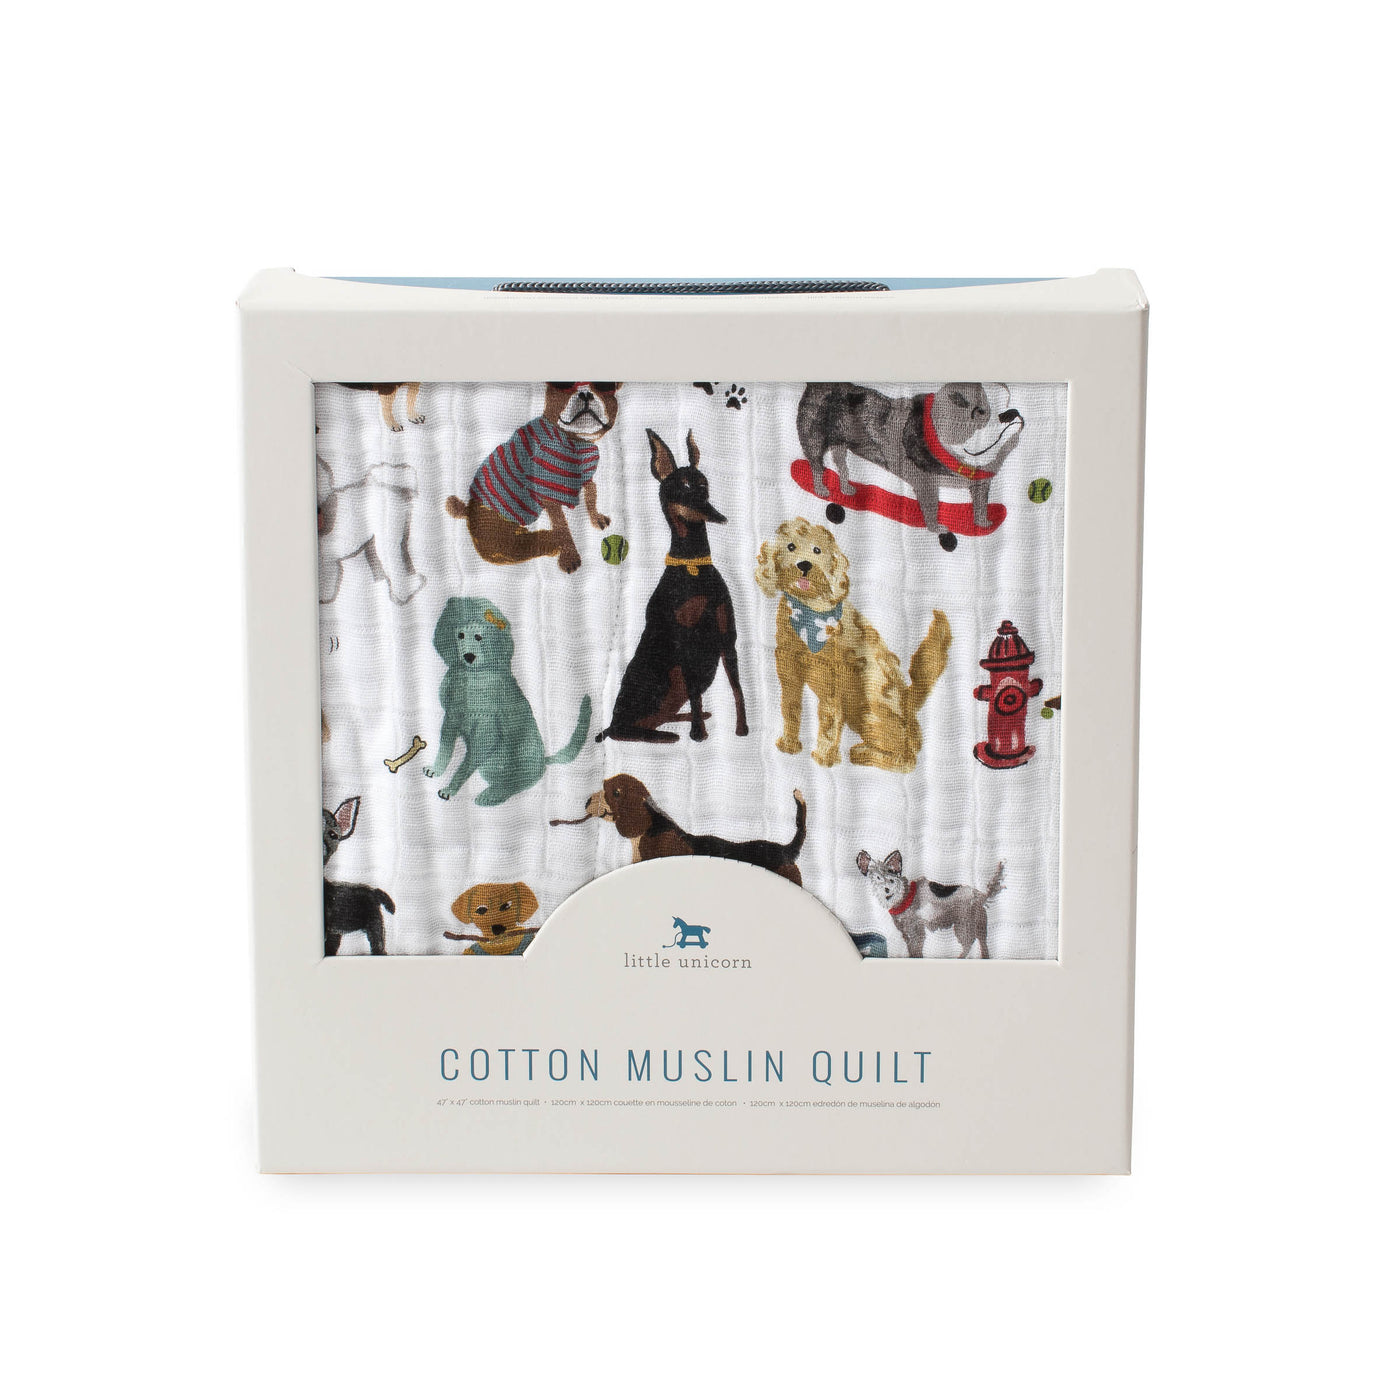 Cotton Muslin Quilt - Woof